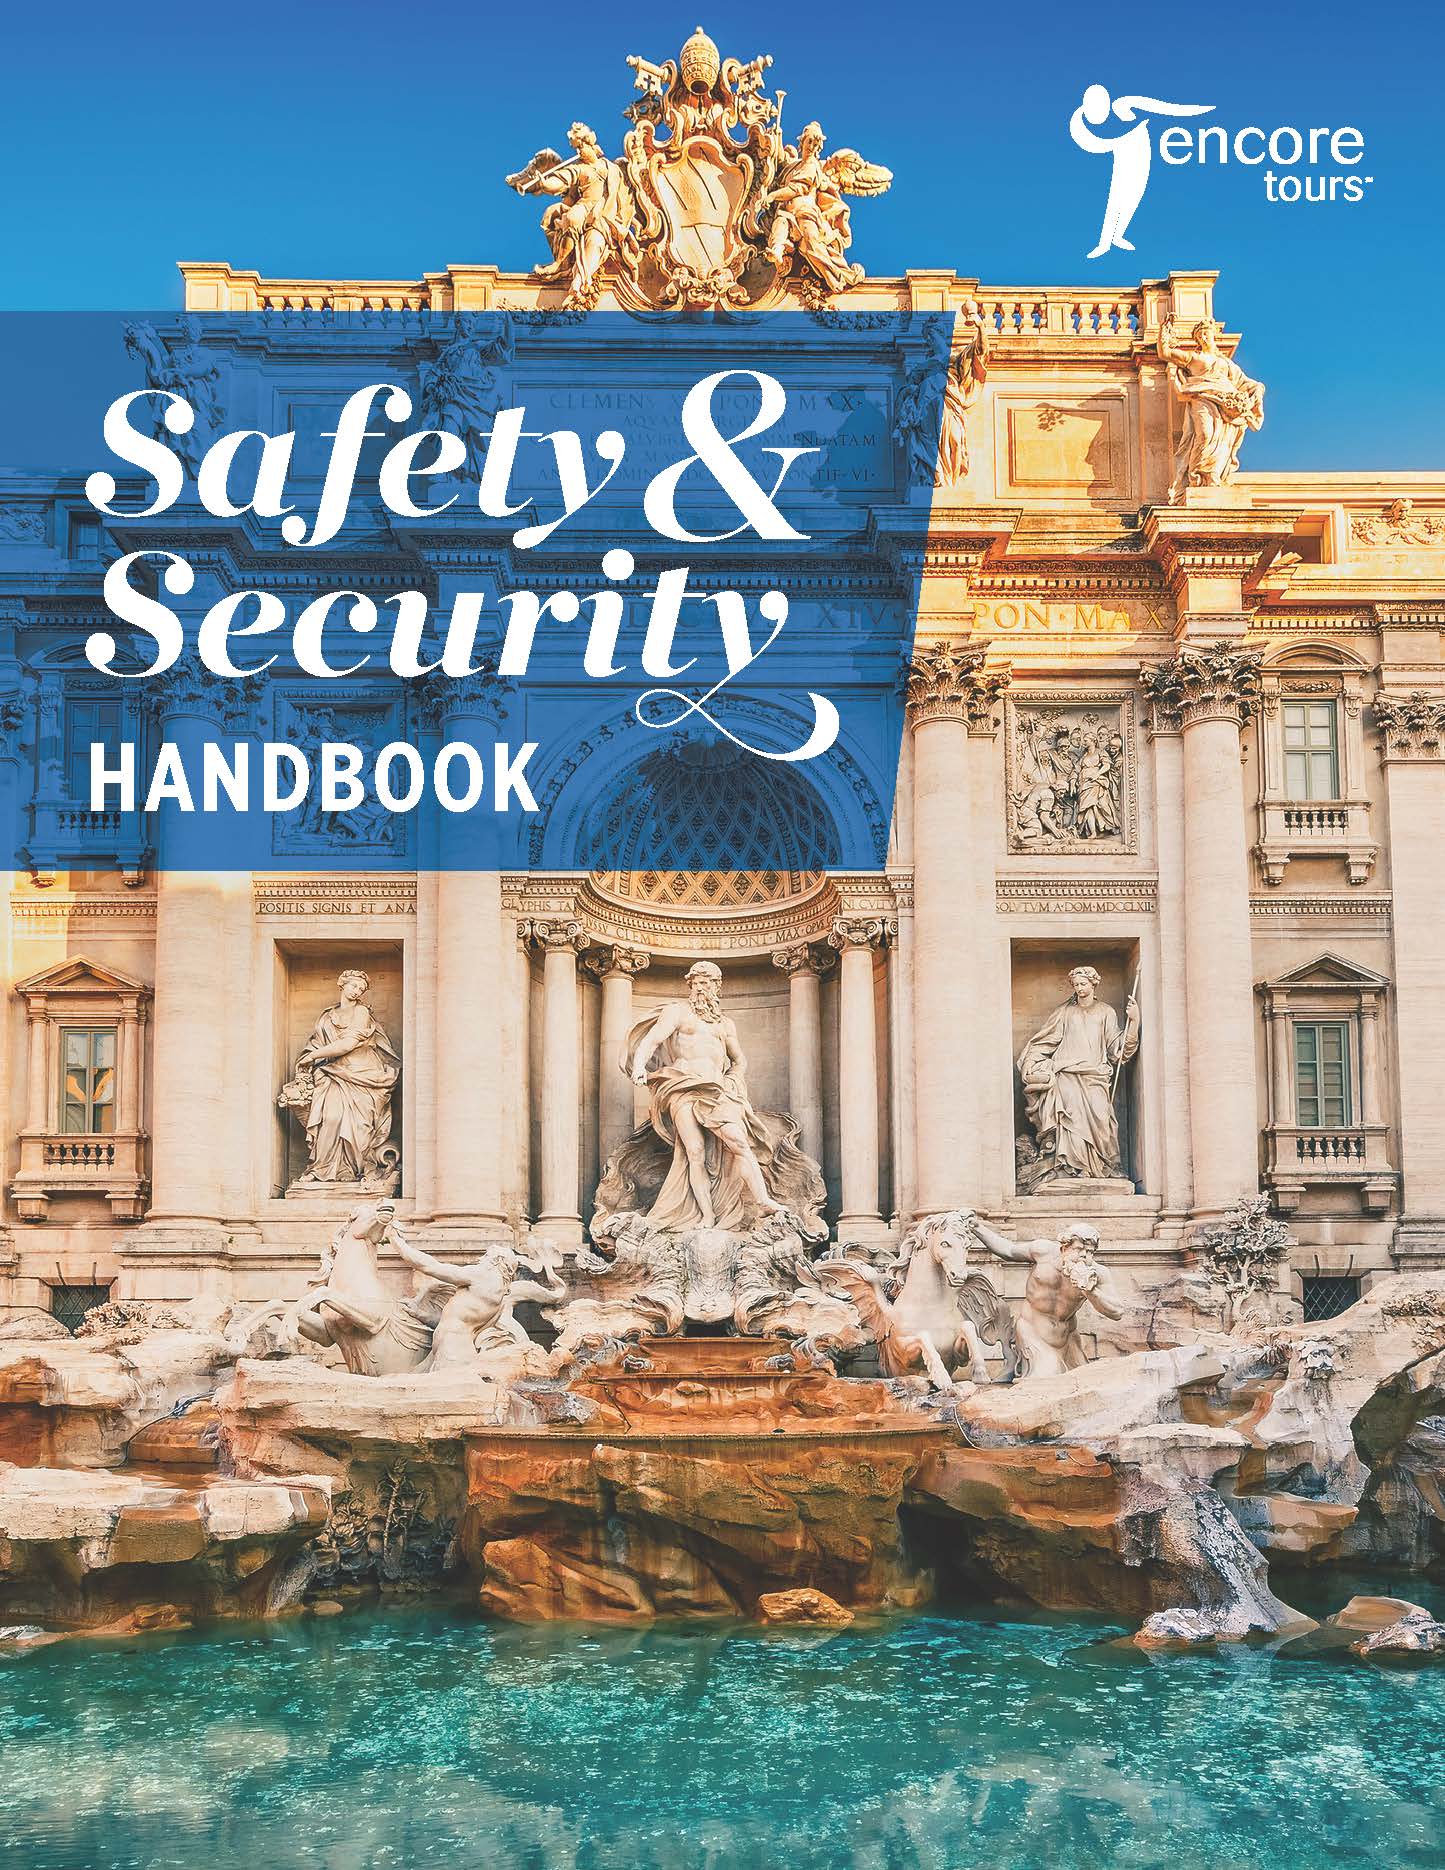 Encore Safety & Security Handbook